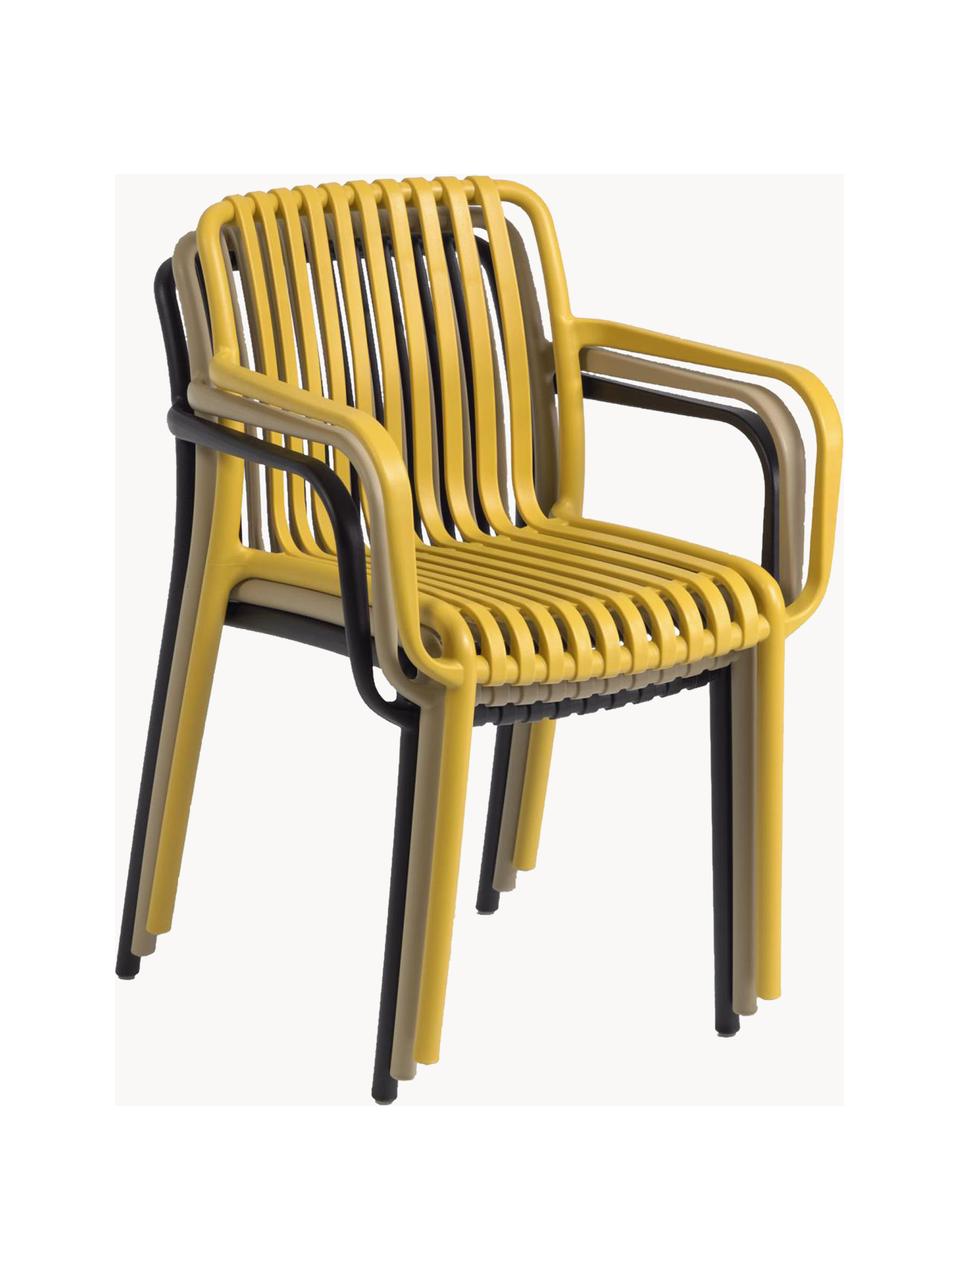 Krzesło ogrodowe z podłokietnikami Isabellini, Tworzywo sztuczne, Czarny, S 54 x G 49 cm